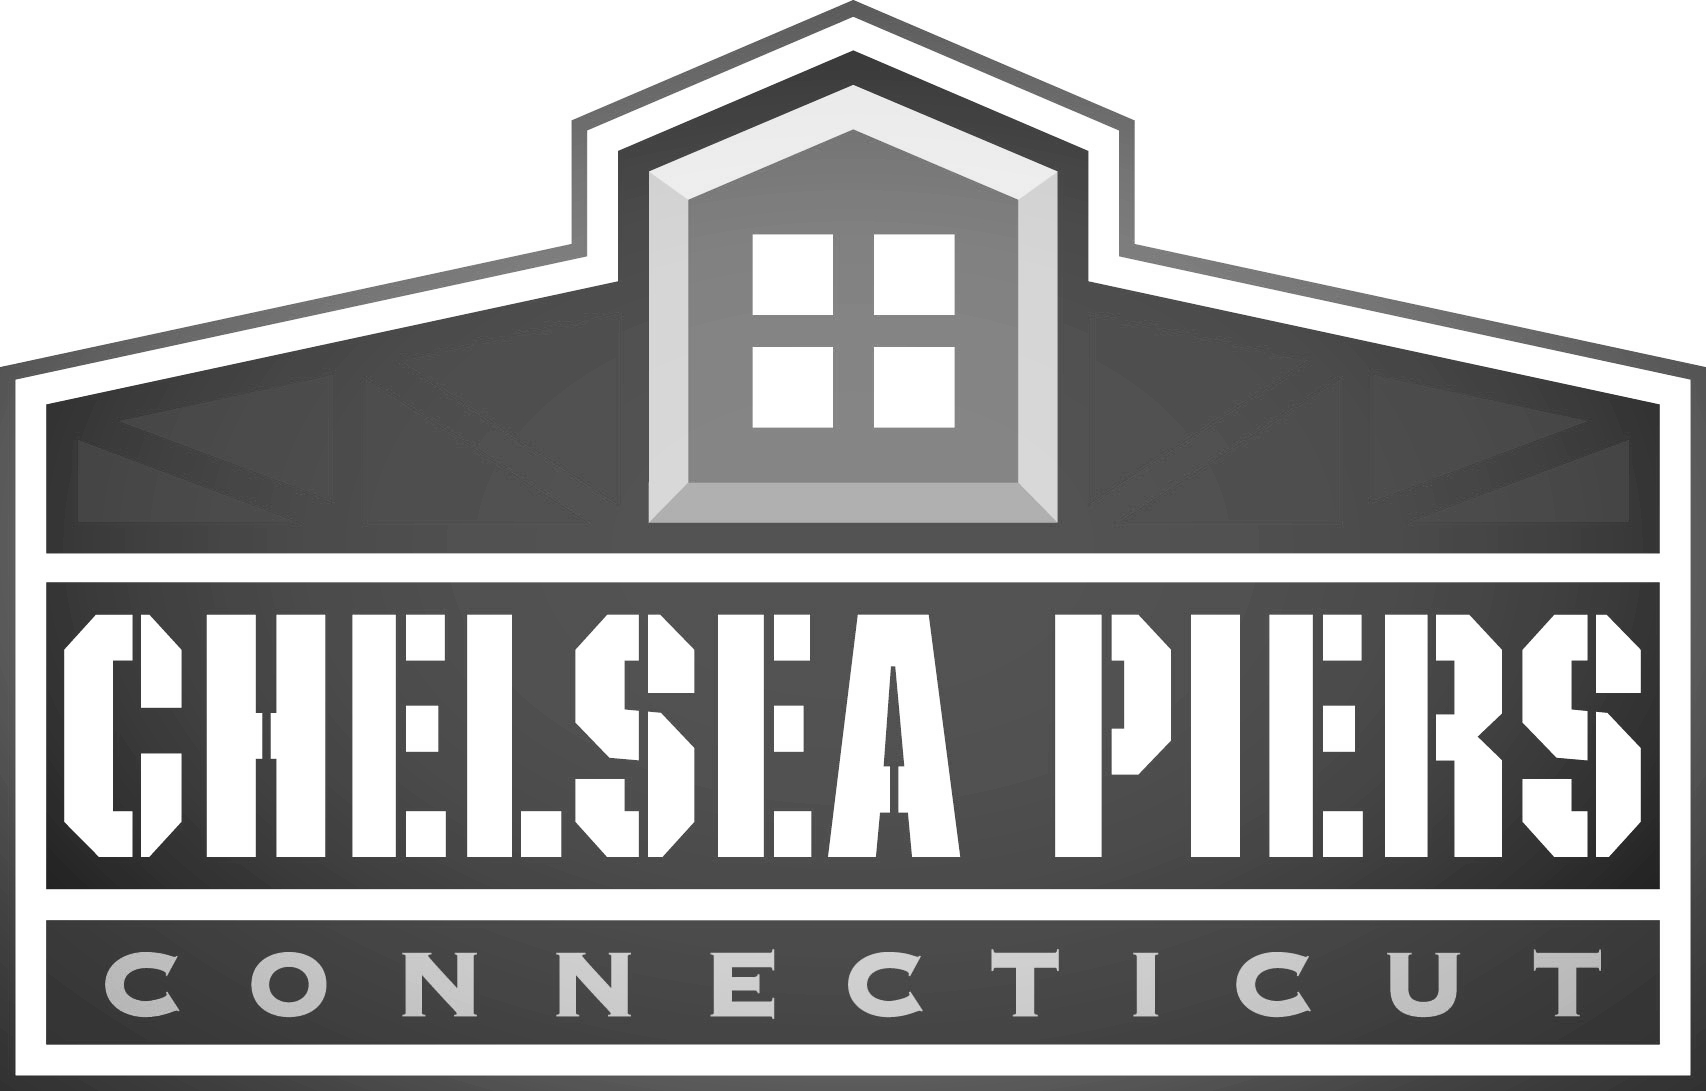 Chelsea Piers CT Logo.jpg